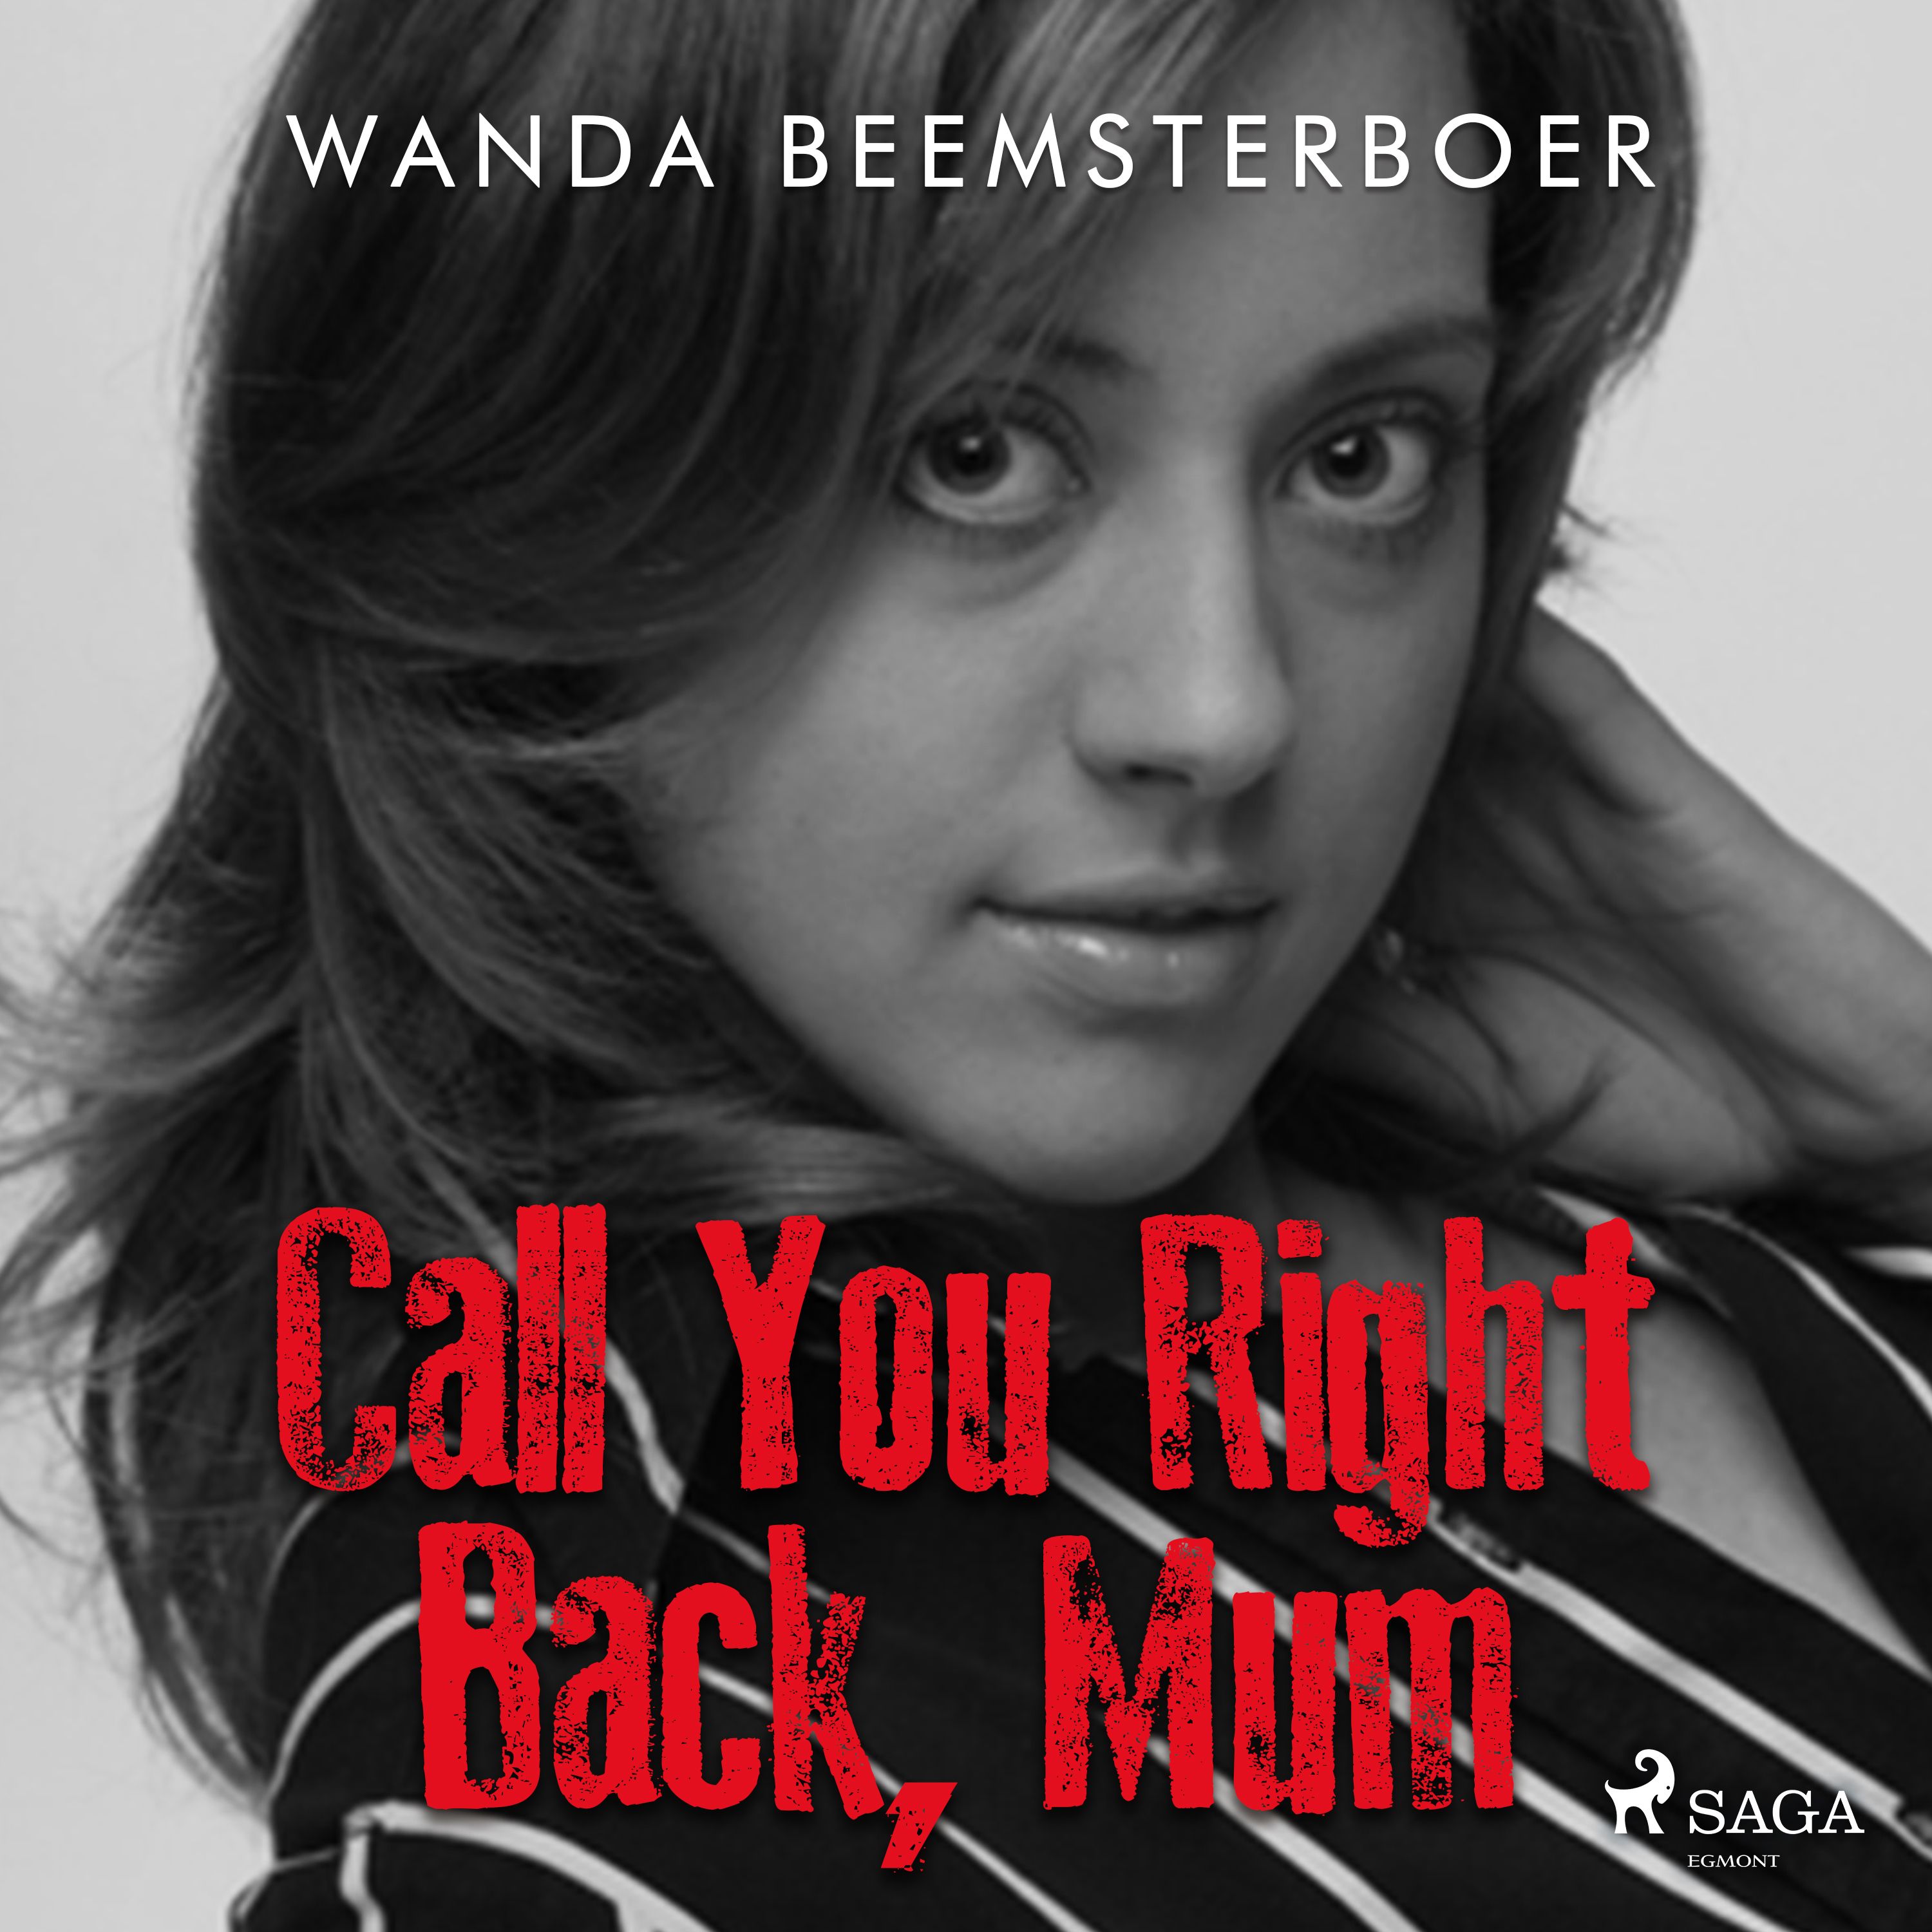 Call You Right Back, Mum, ljudbok av Wanda Beemsterboer